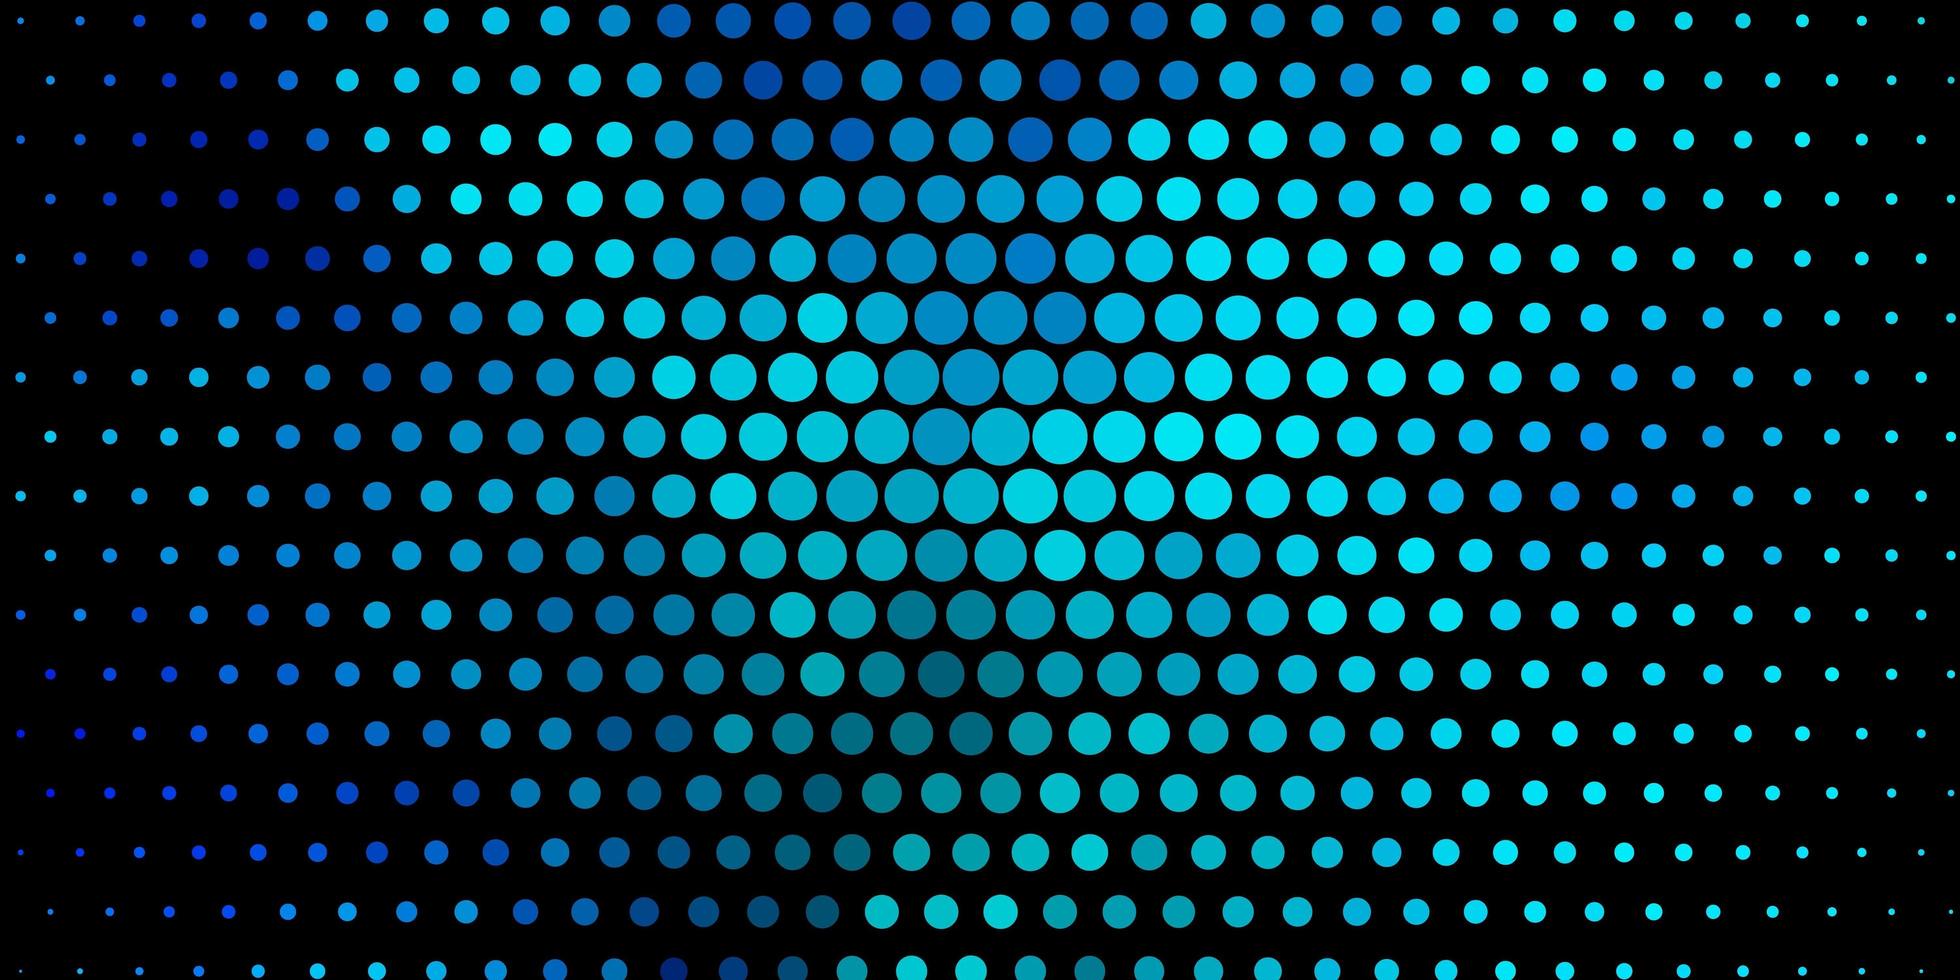 trama vettoriale blu scuro con dischi glitter illustrazione astratta con motivo a gocce colorate per sfondi tende